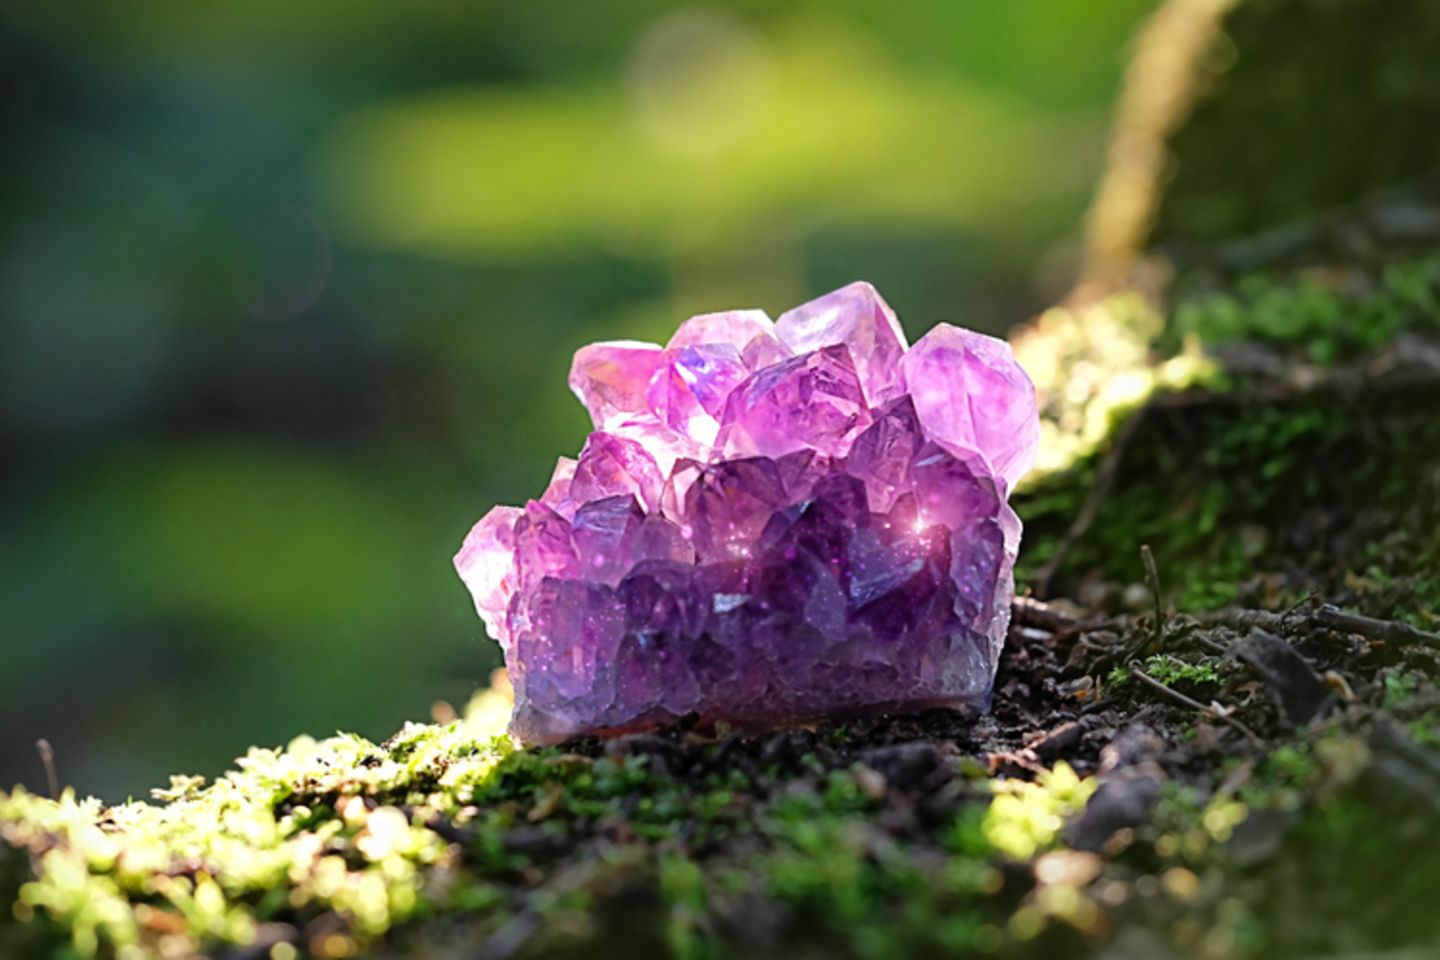 Kristalle züchten: Kristall auf der Erde